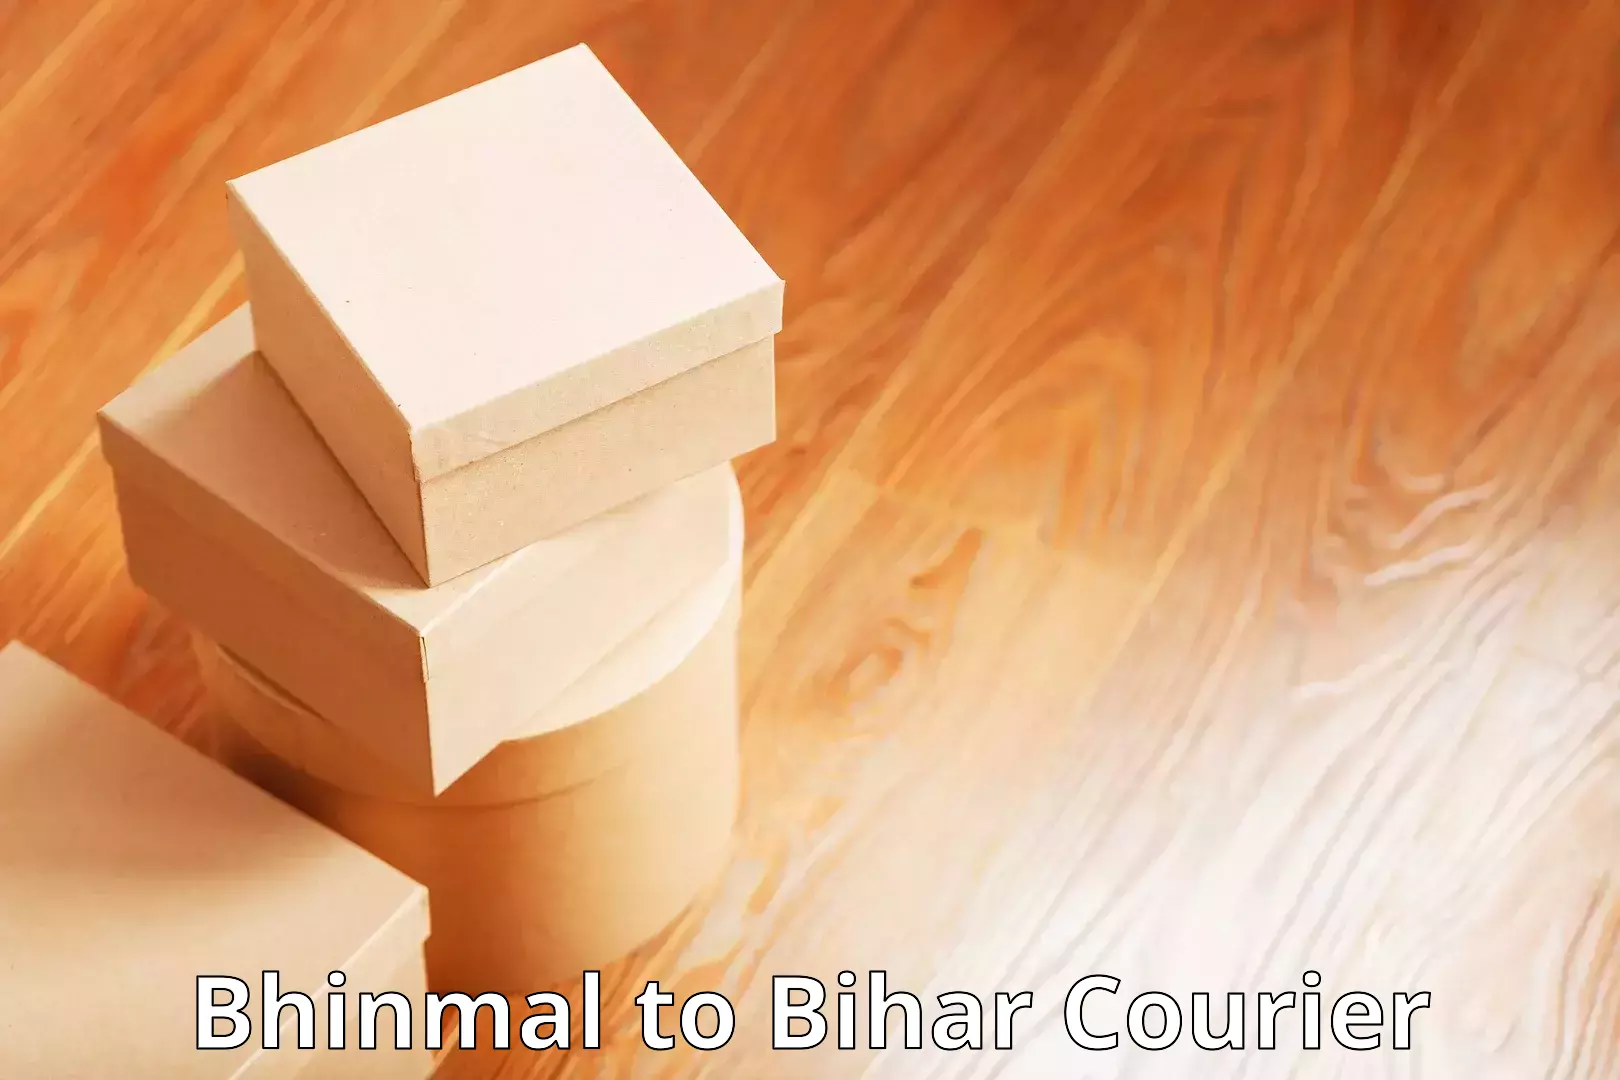 Bulk order courier Bhinmal to Bihar